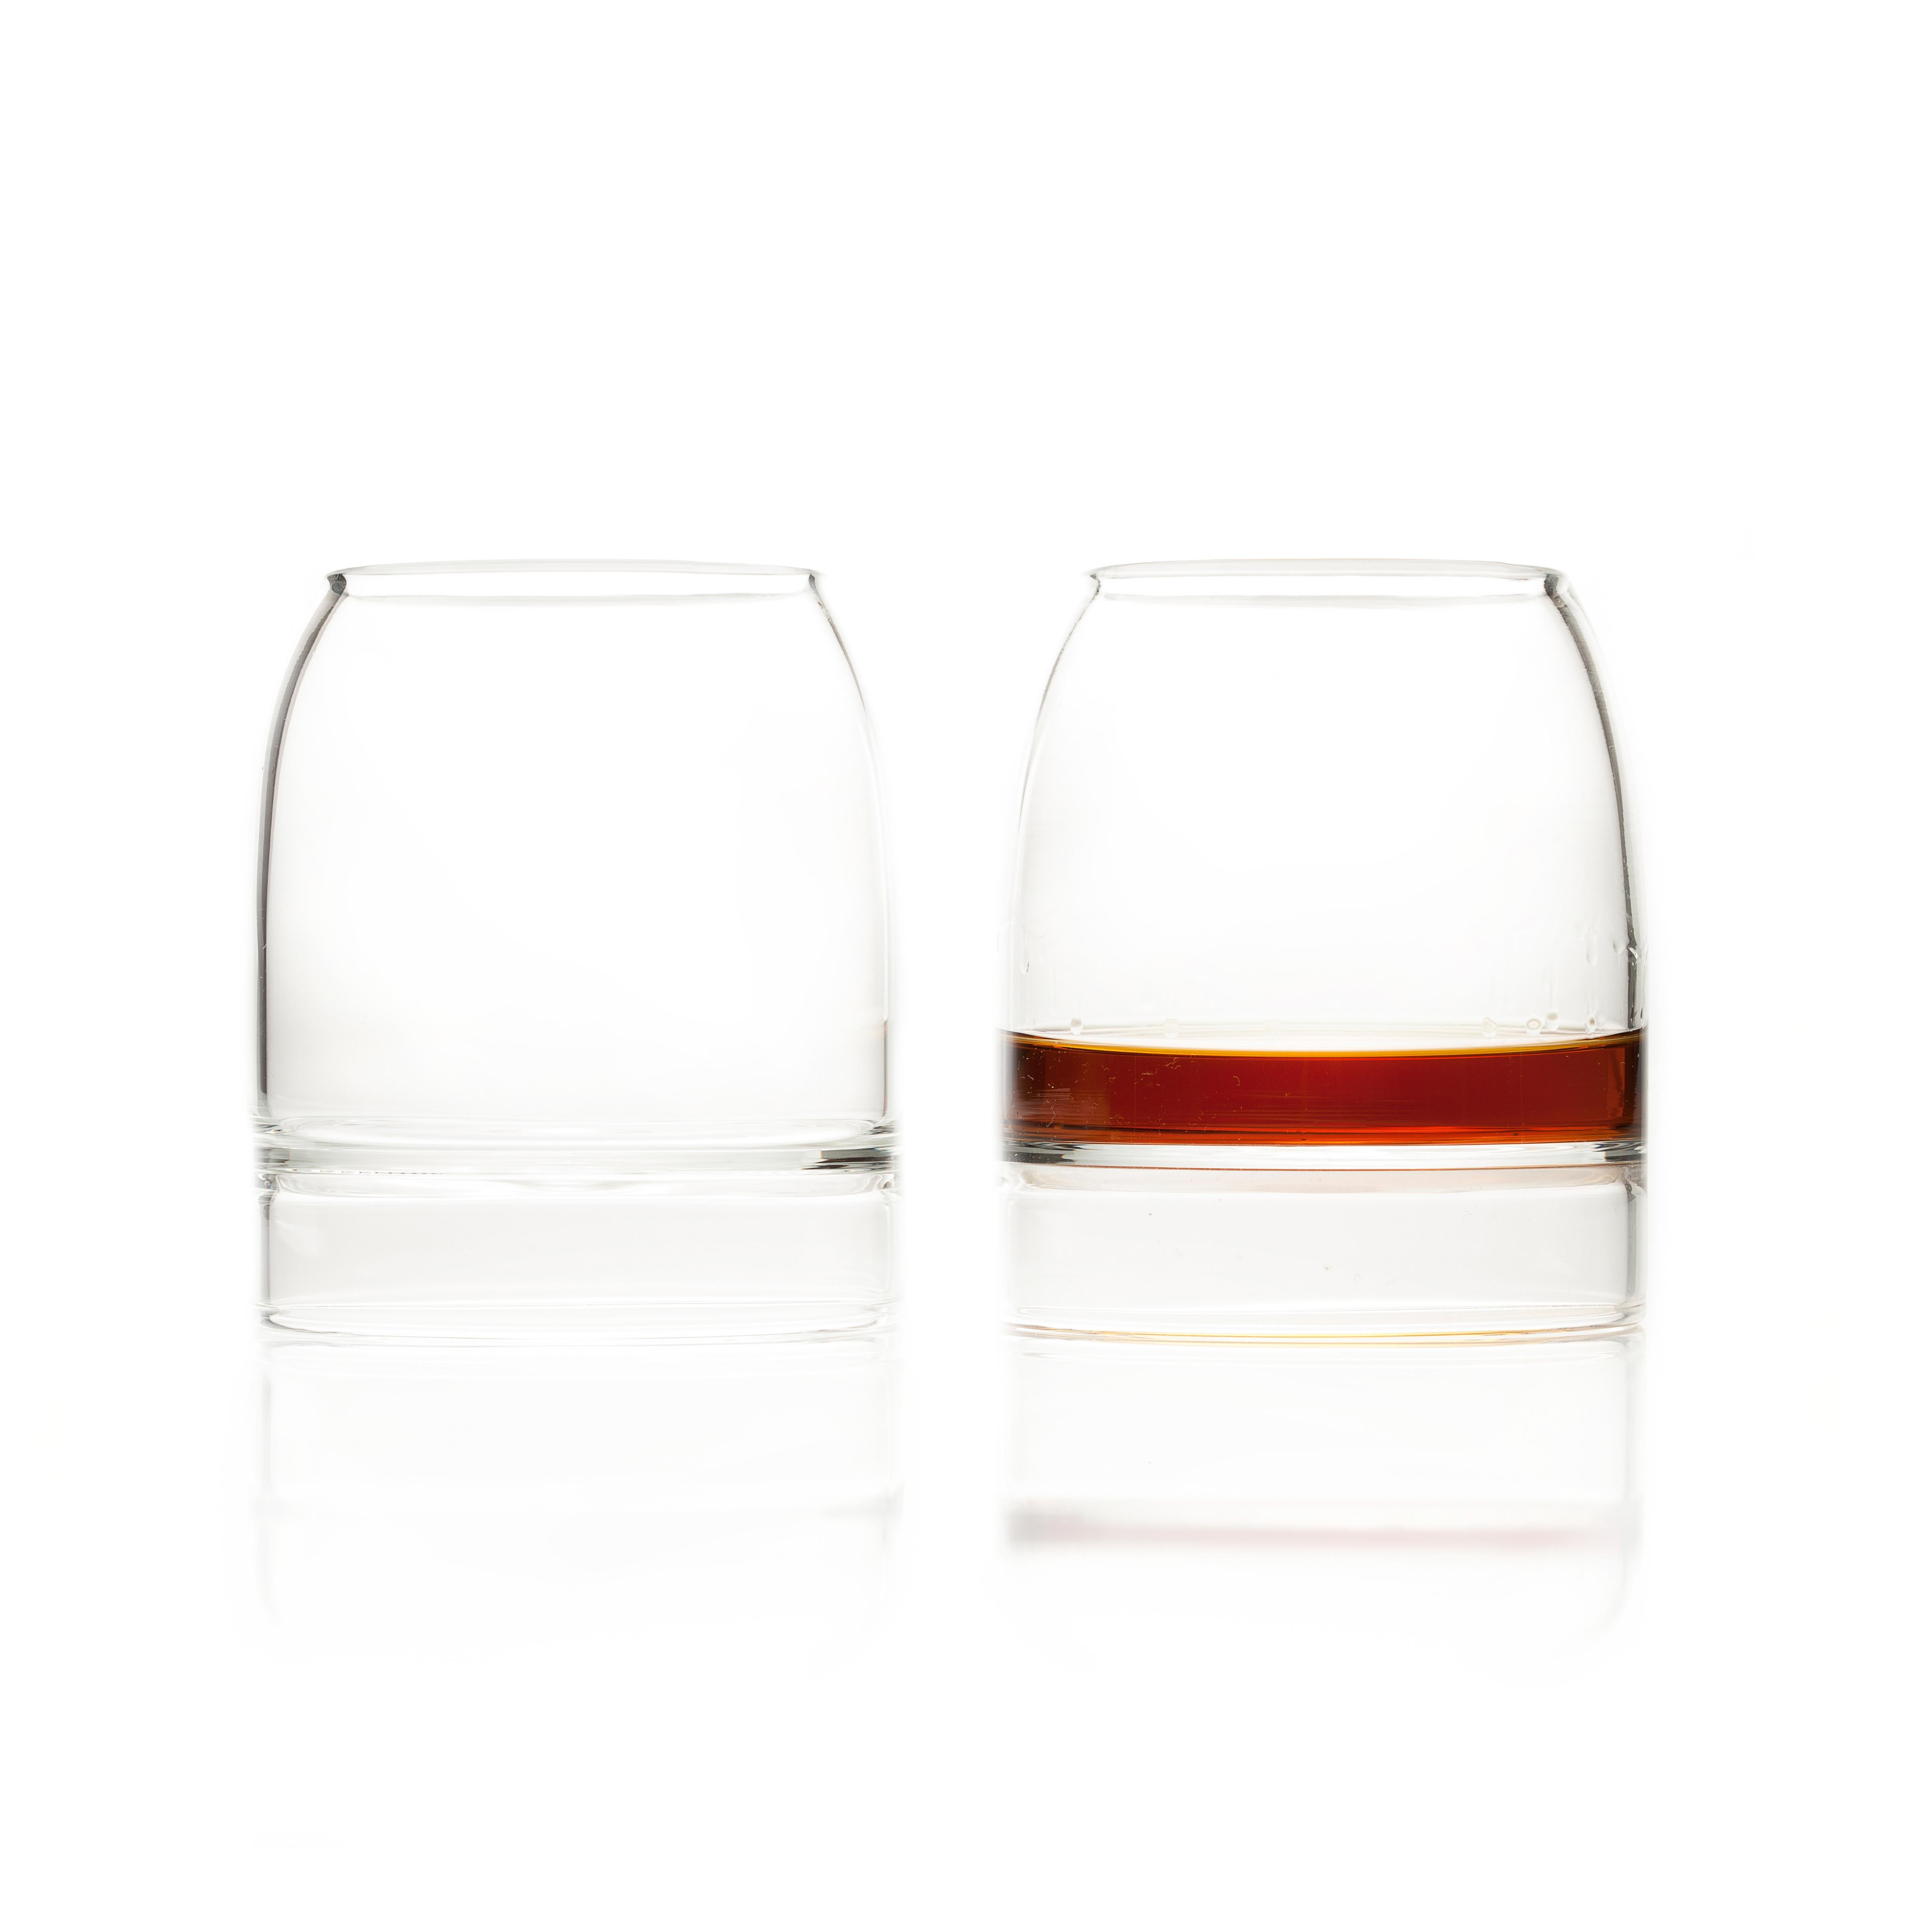 RARE WHISKEY GLAS - Satz von zwei

Das Rare Glass konzentriert sich auf die Präsentation und das Erlebnis. Rare wurde von The Macallan für die Markteinführung seines Rare Cask Scotch in Auftrag gegeben und ist ein technisches Glas, das die Aromen in